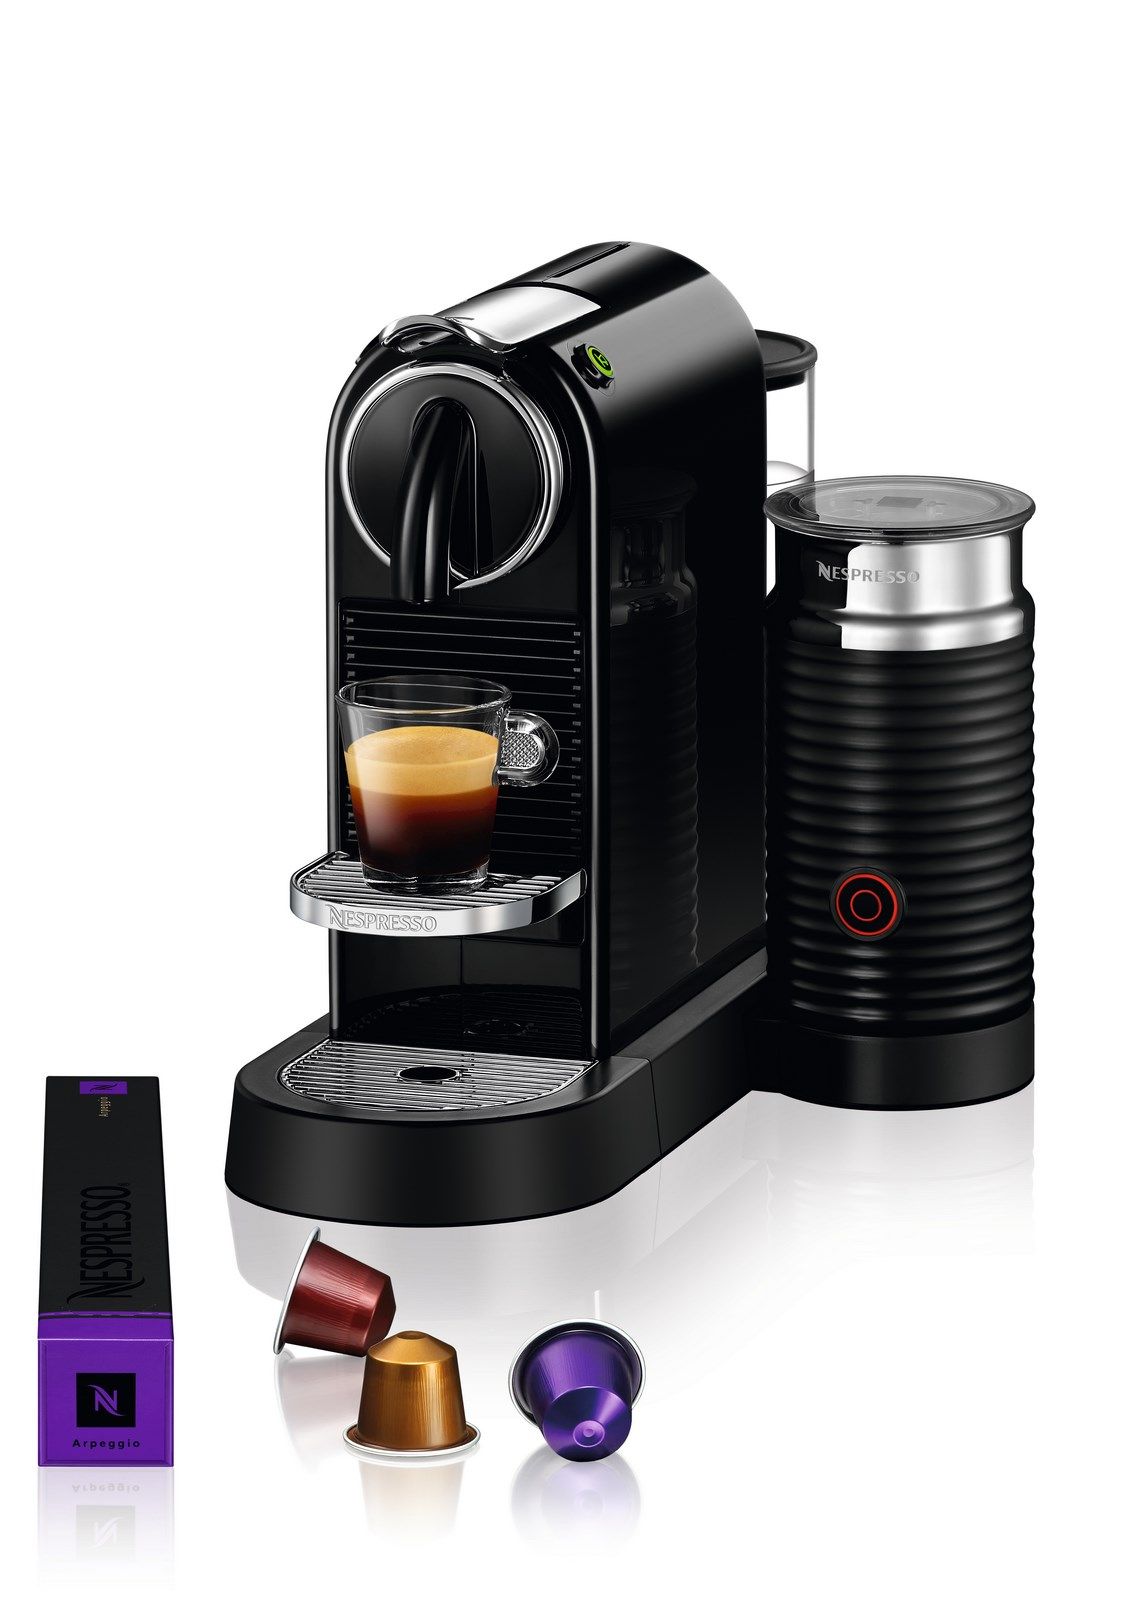  Citiz & Milk D123 Kaffemaskine Fra Delonghi, Black